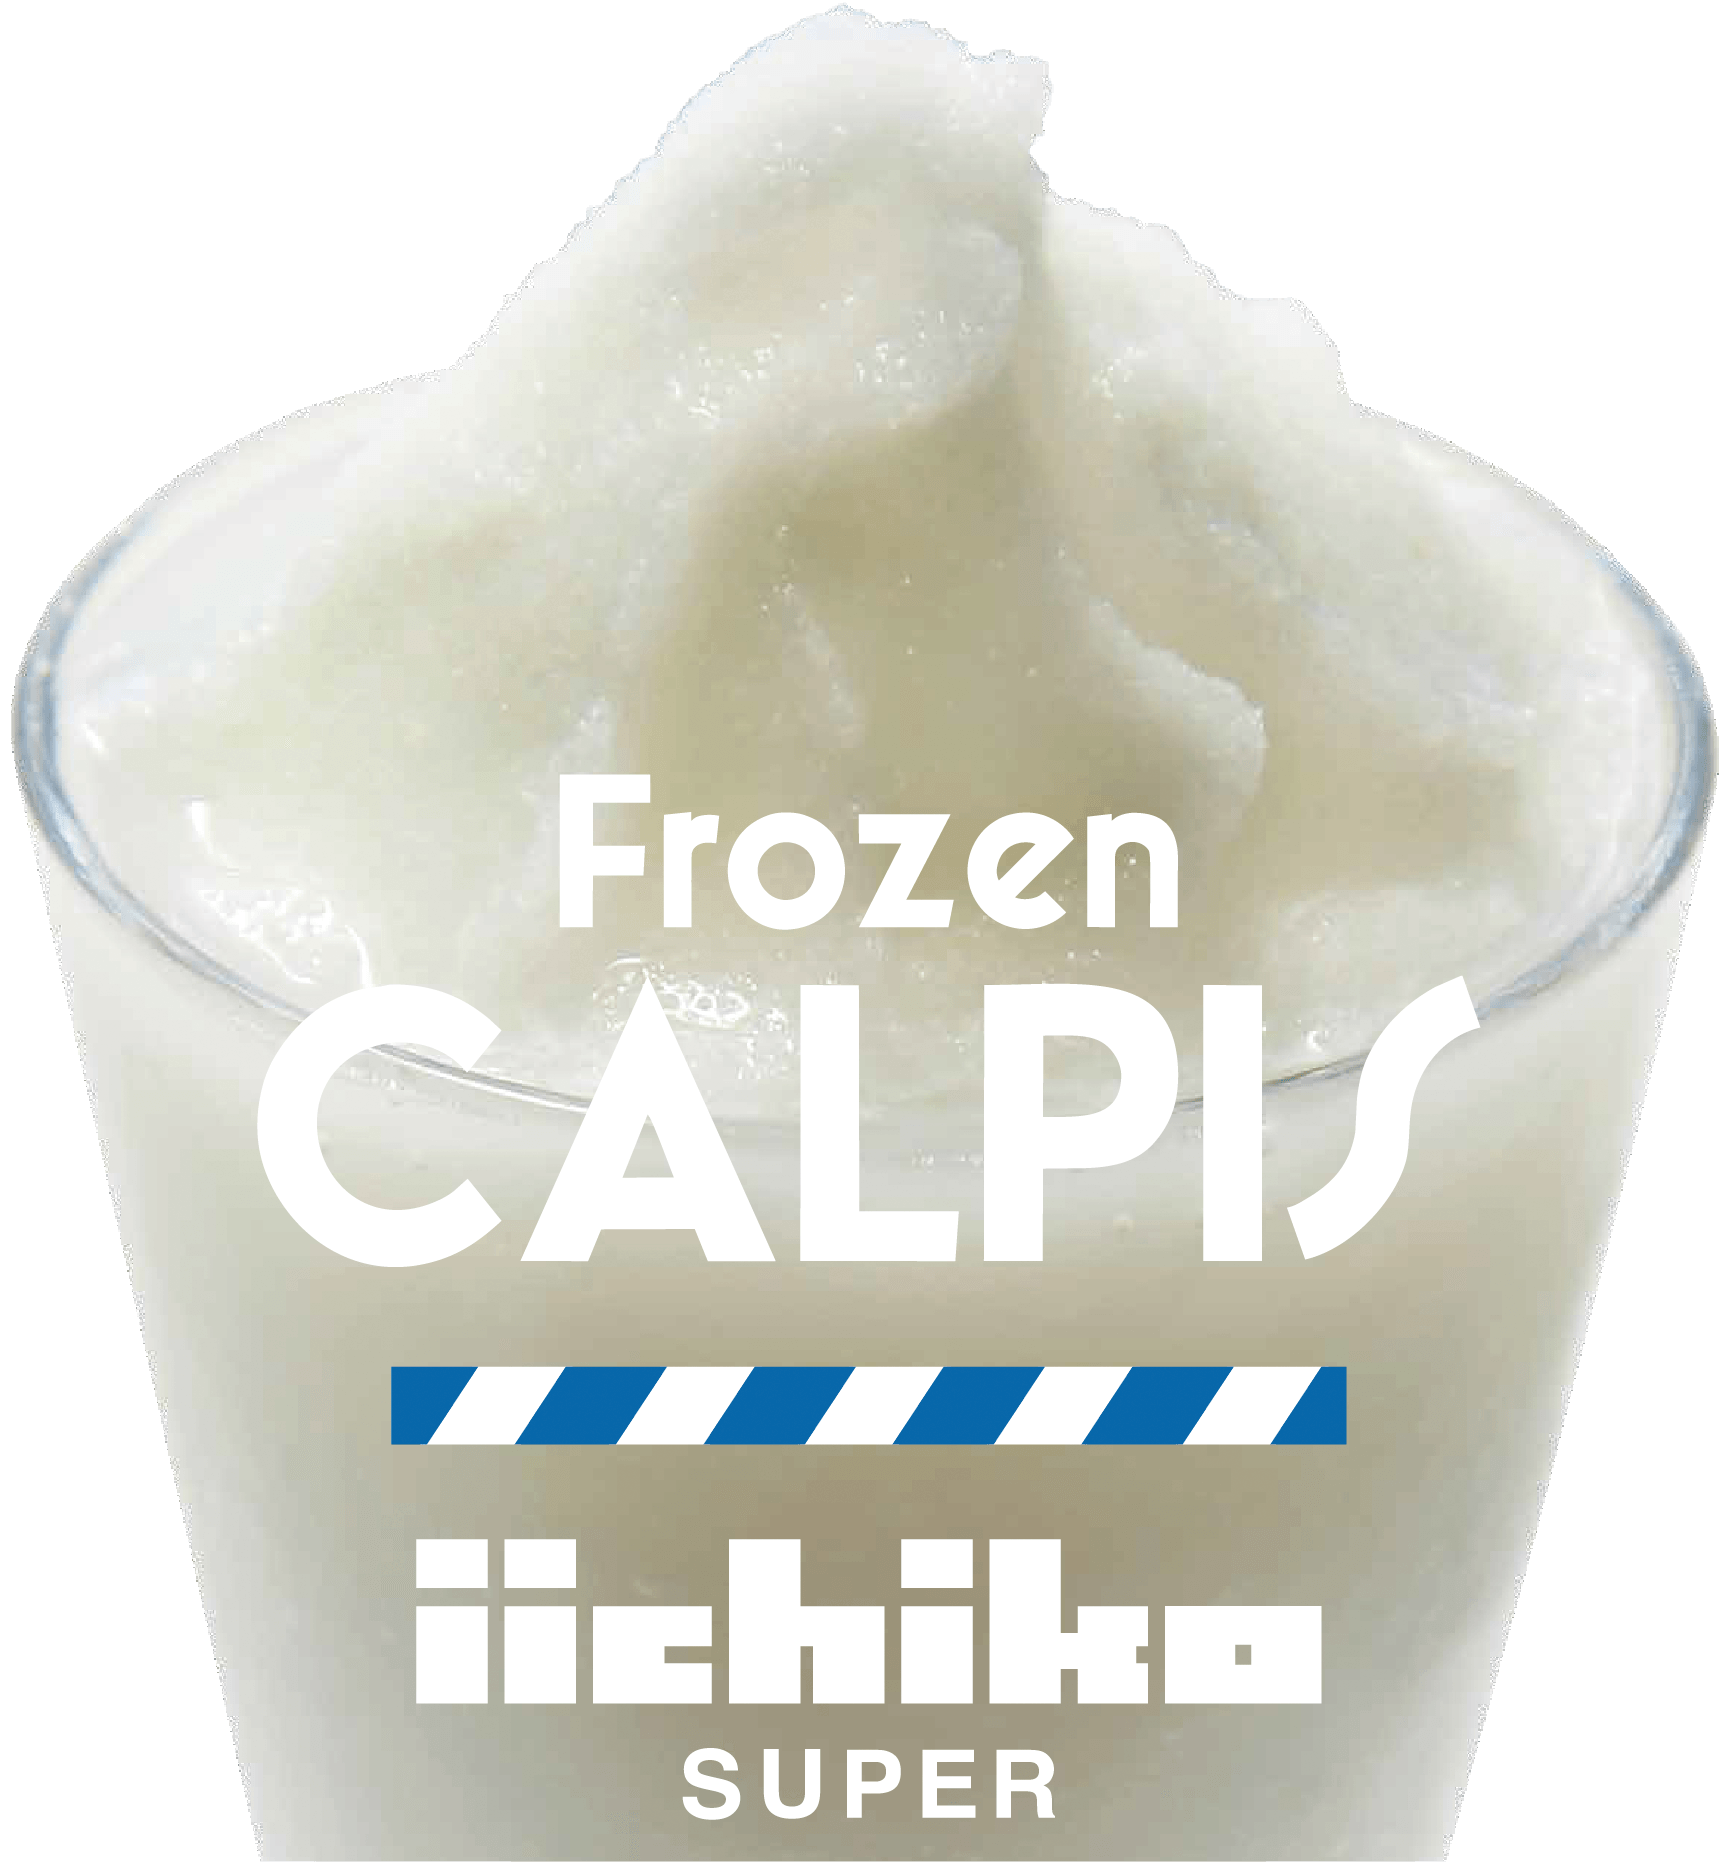 Frozen CALPIS iichiko SUPER